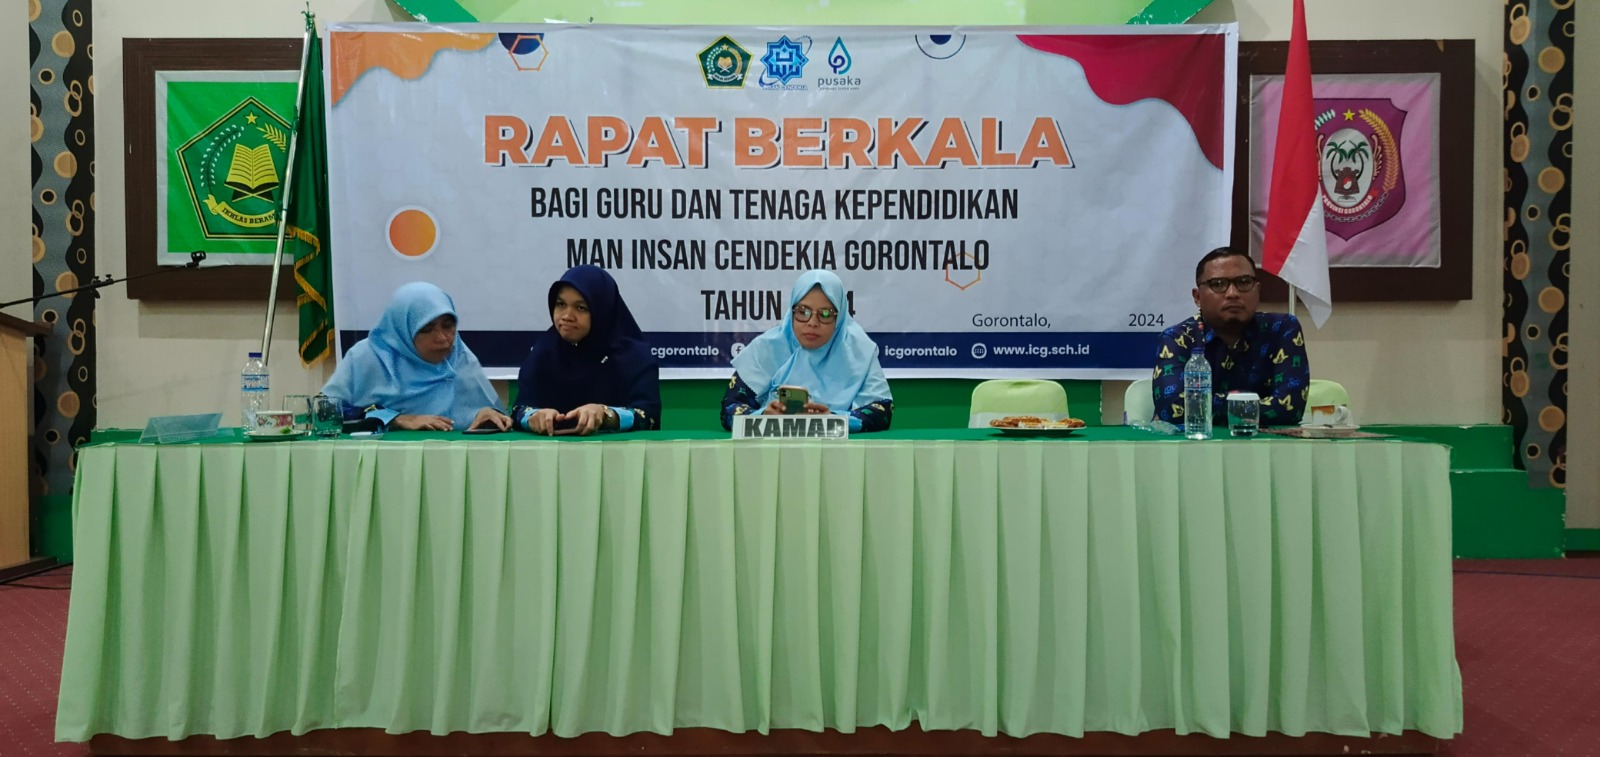 Optimalisasi Kinerja: Program Kerja Madrasah Jadi Pusat Perhatian pada Rapat Berkala MAN IC Gorontalo untuk Peningkatan Kualitas Pendidikan